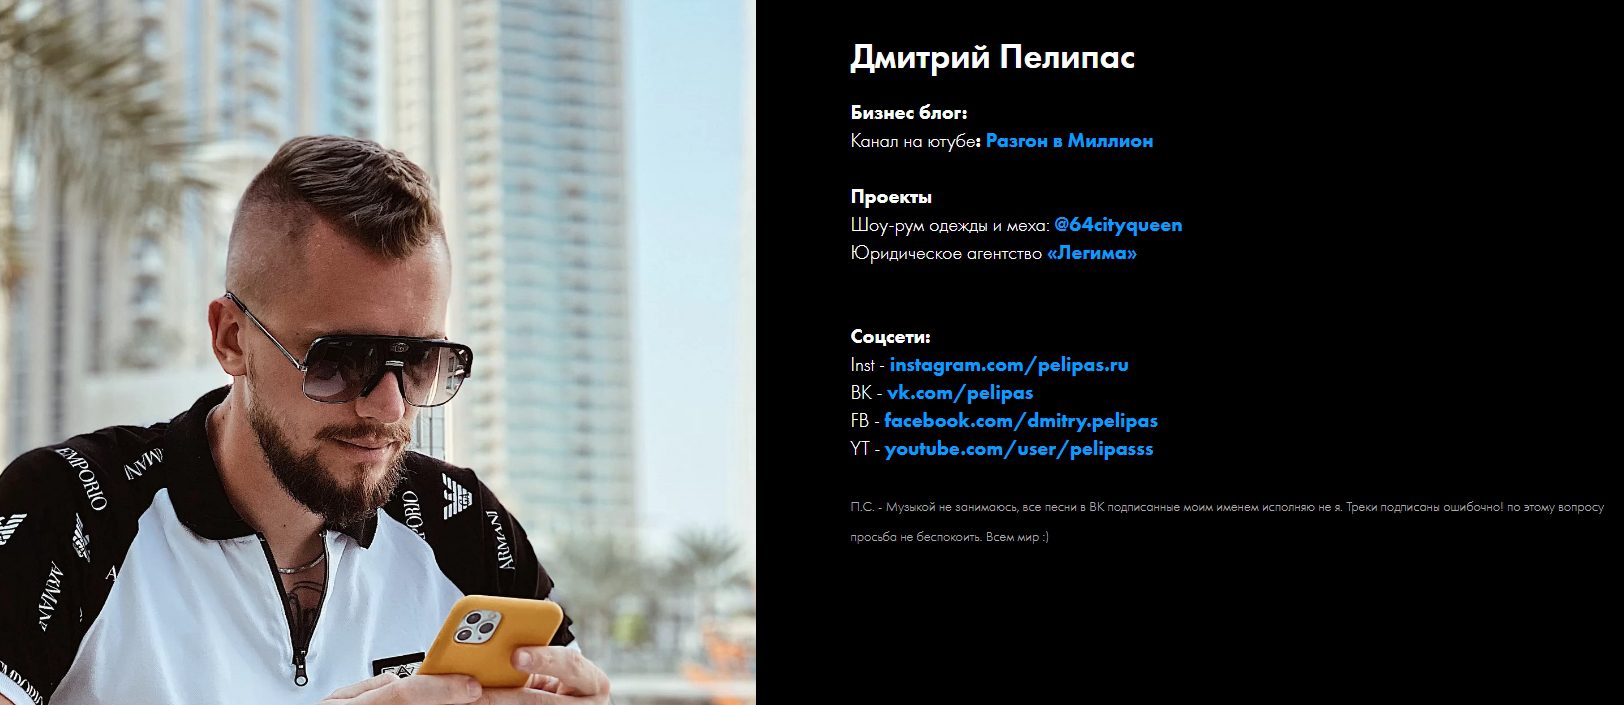 Пелипас Дмитрий — трейдер, автор эксклюзивного курса по инвестициям